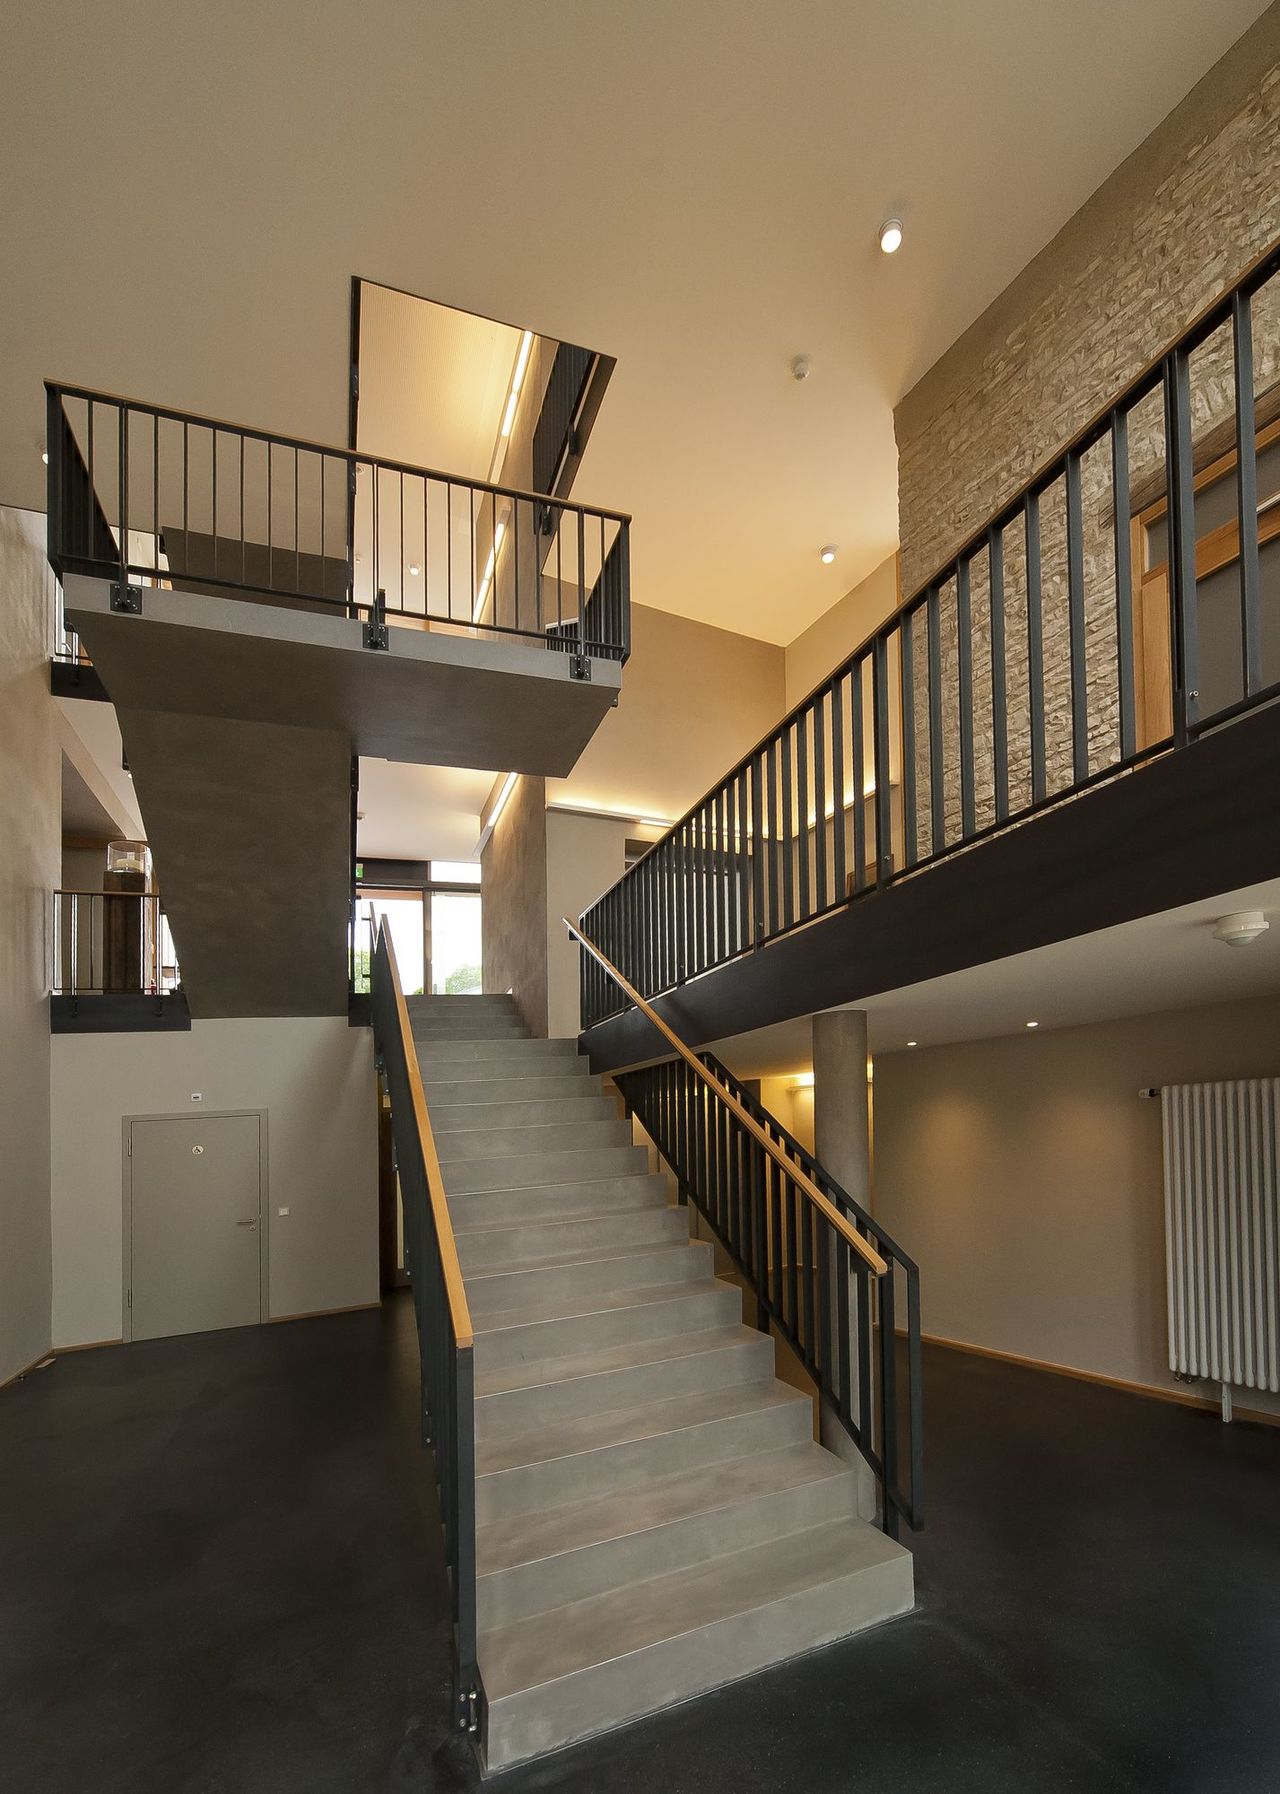 Foto: Blick auf das Treppemhaus des neuen Verbindungsbaus. Die Treppe aus Beton und Stahl fügt sich perfekt in den hohen Raum ein.